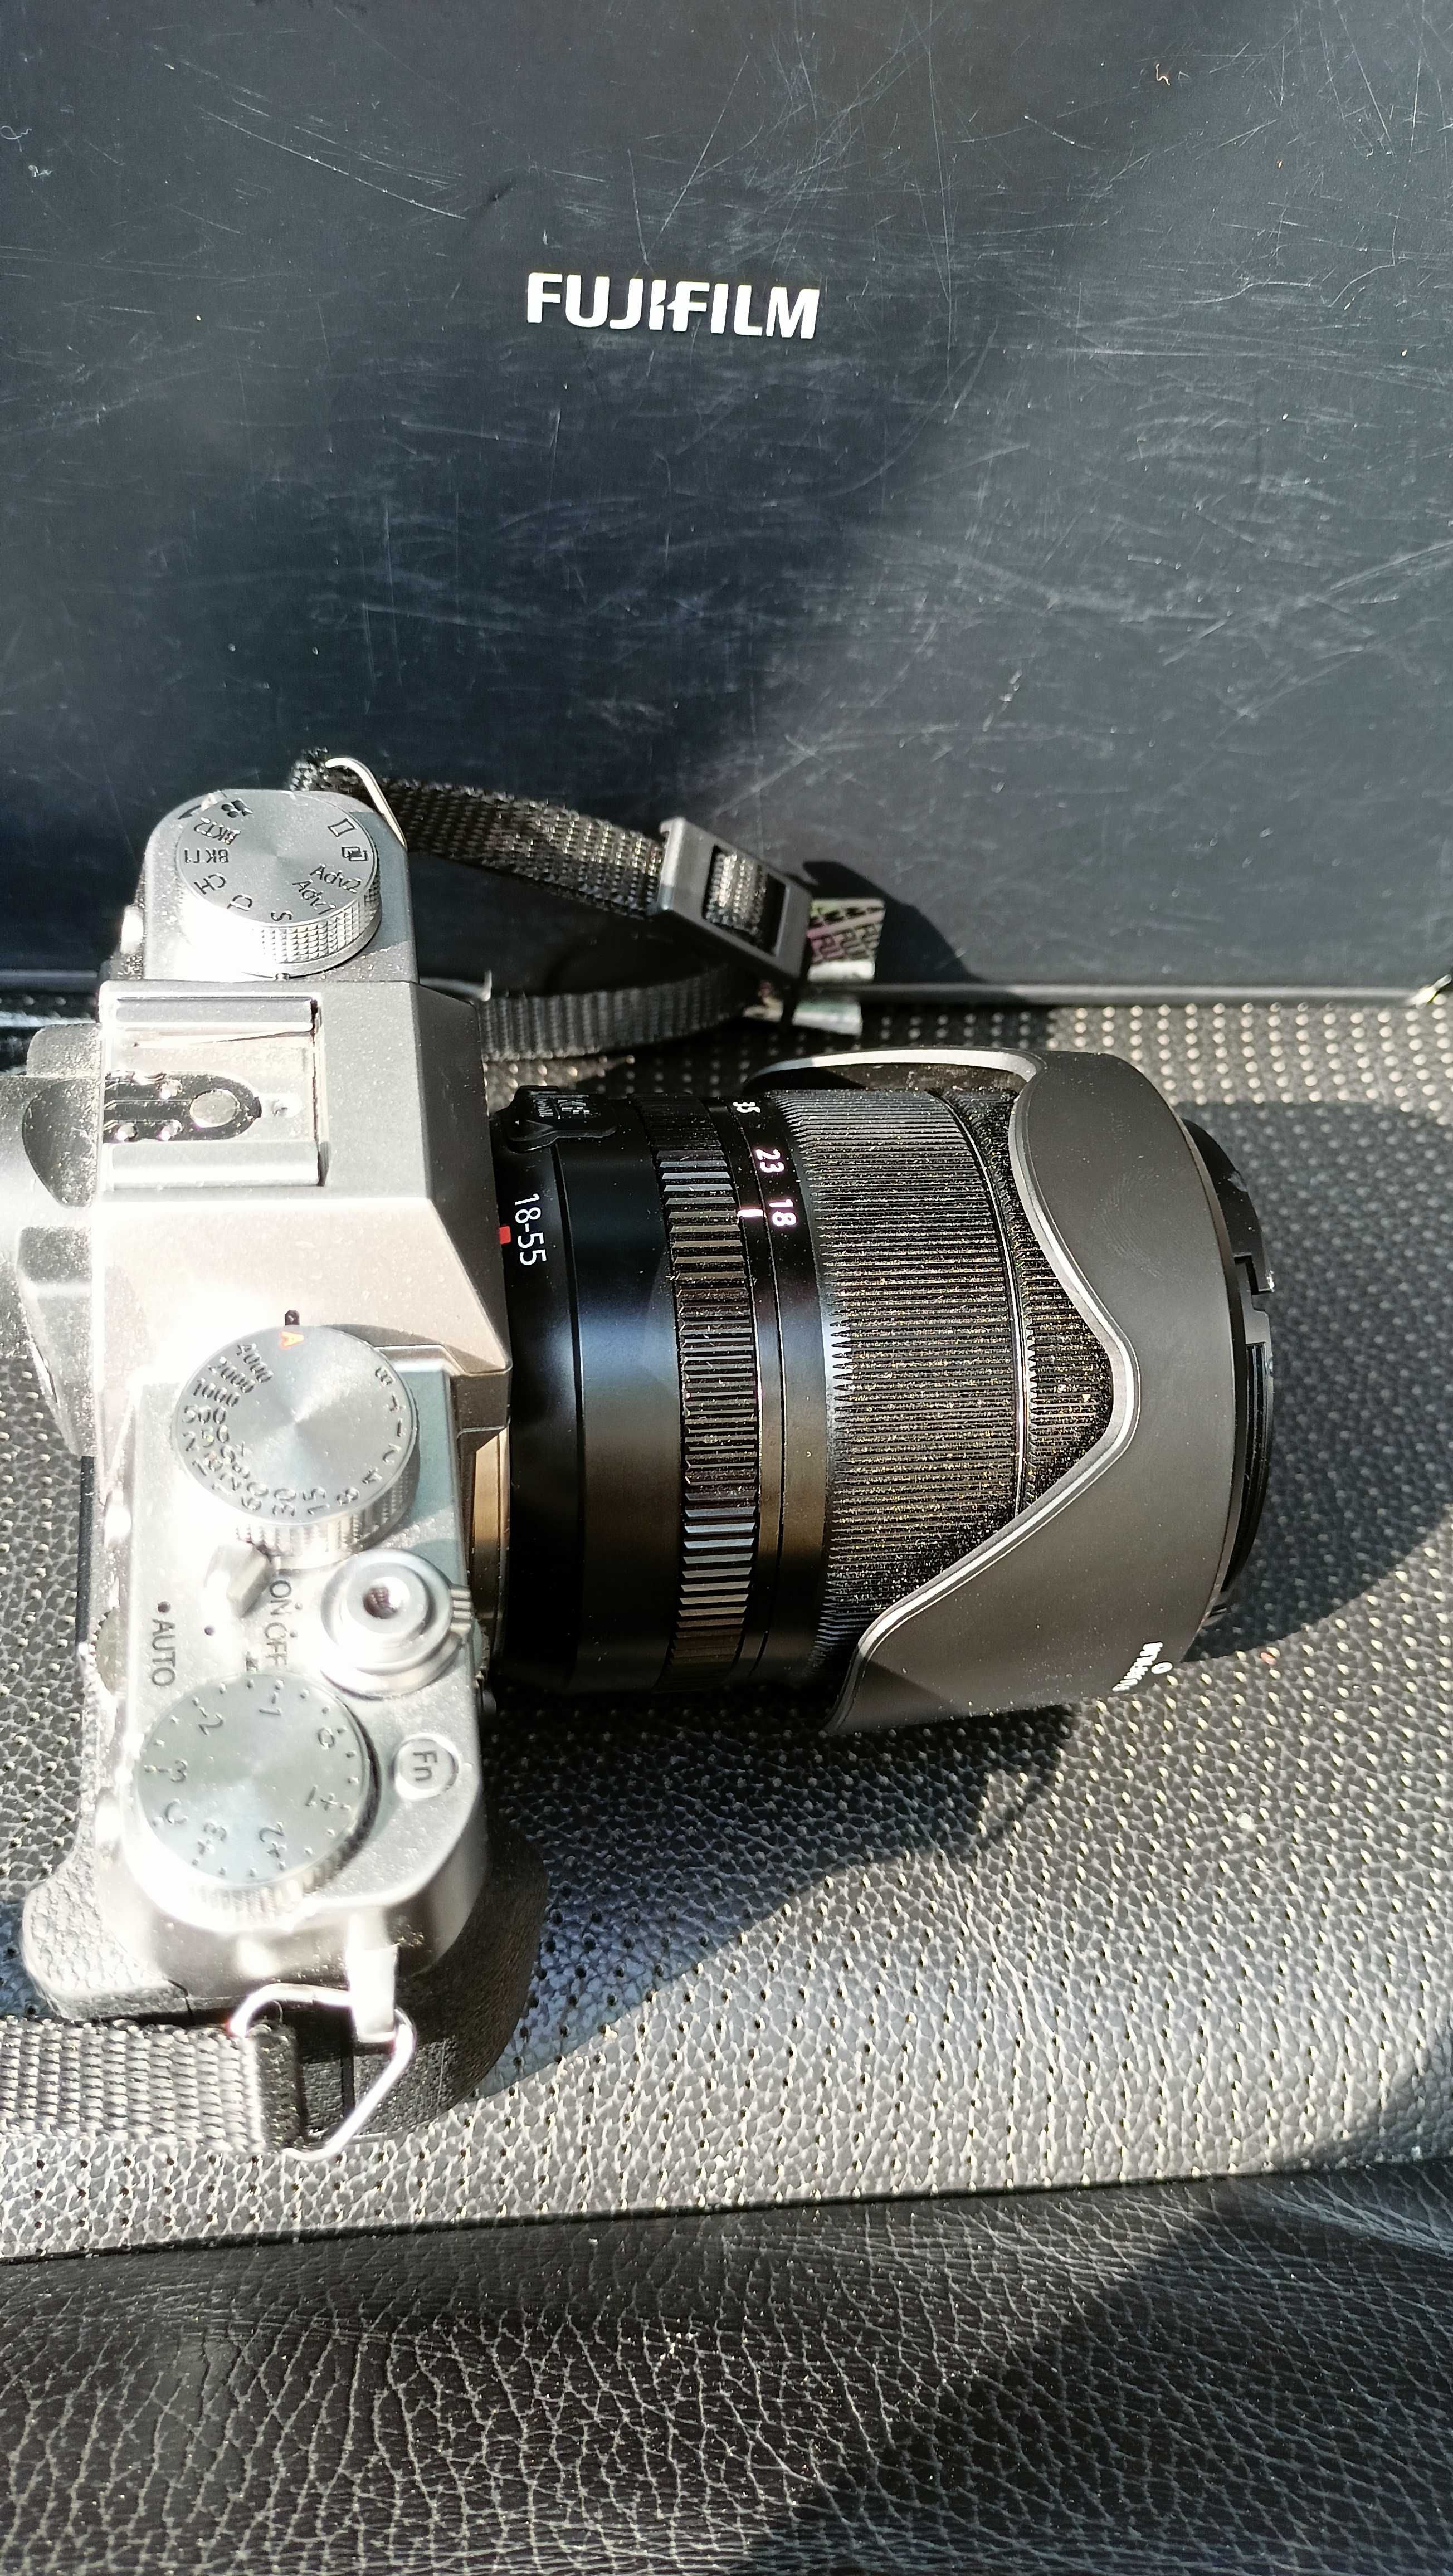 Фотокамера Fujifilm XT-30